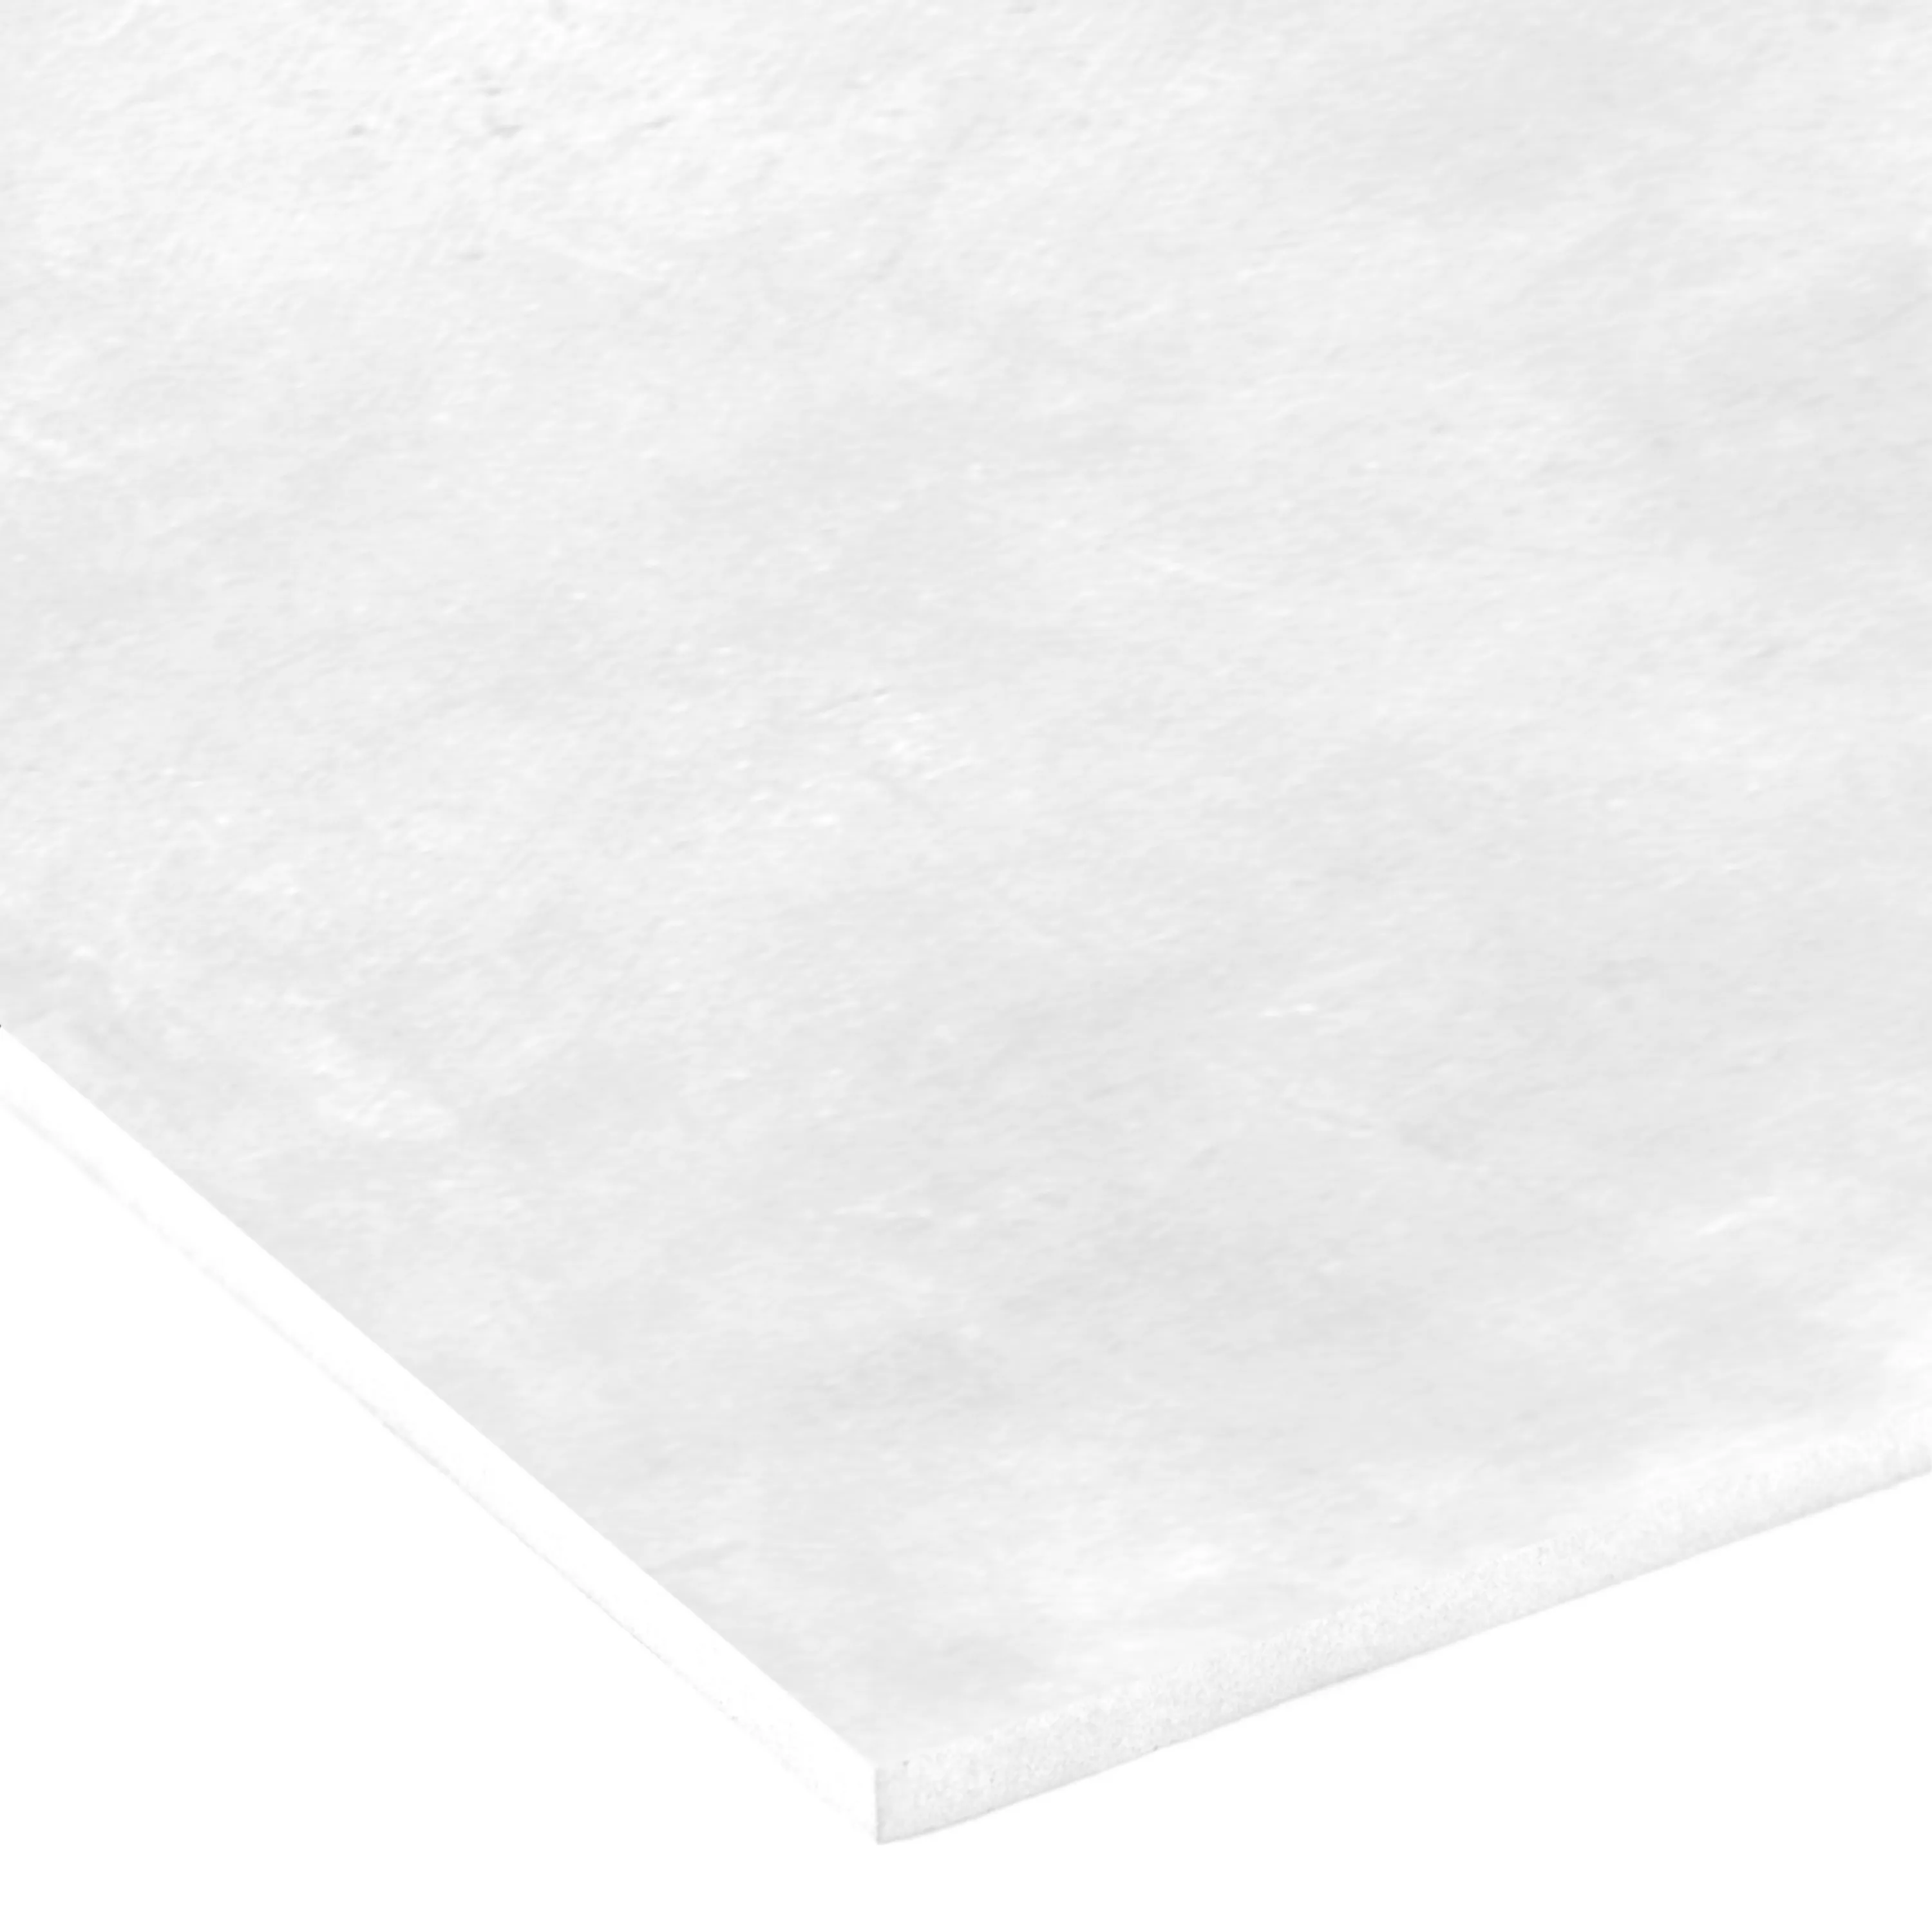 Muestra Revestimientos Viktoria 30x60cm Brillante Blanco Gris